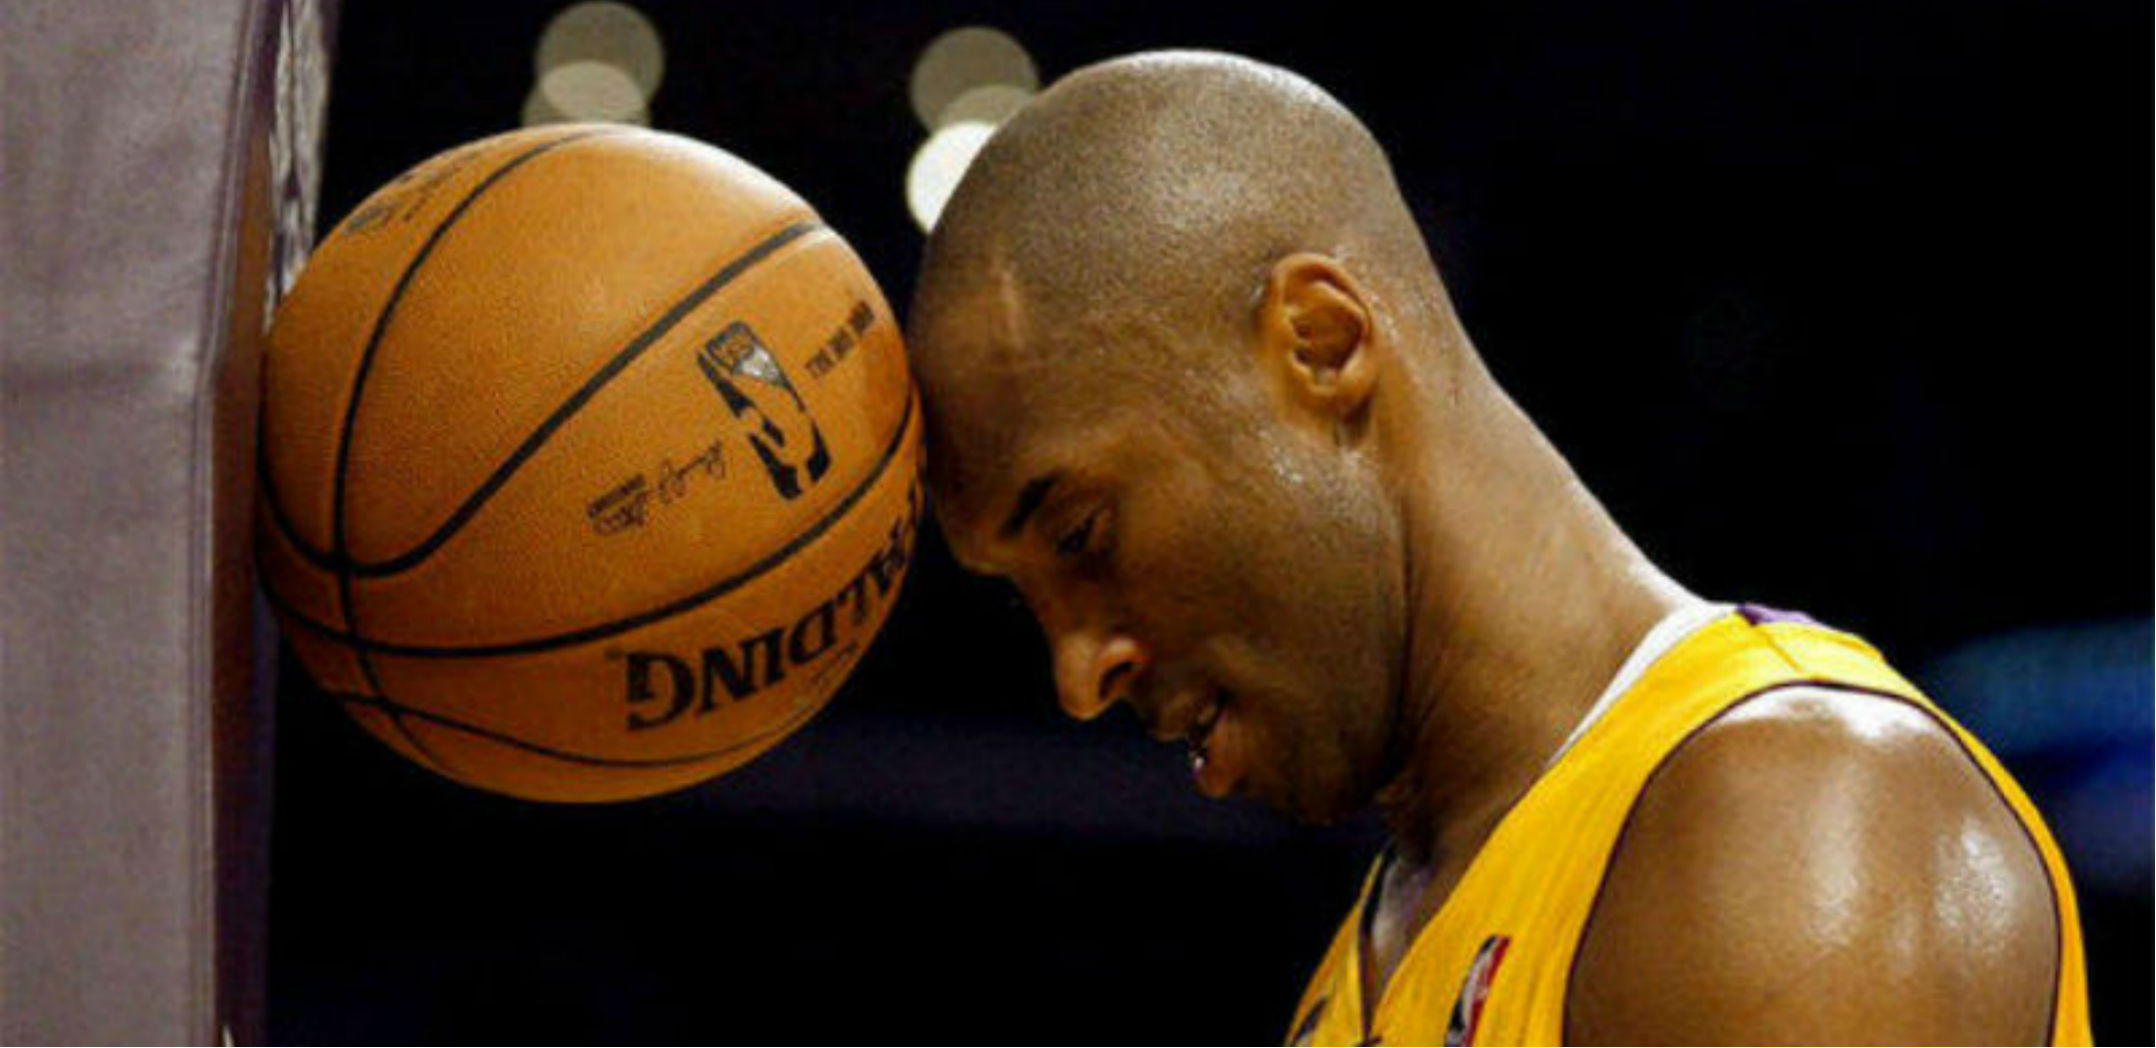 Omaggio al Basket…. omaggio a Kobe